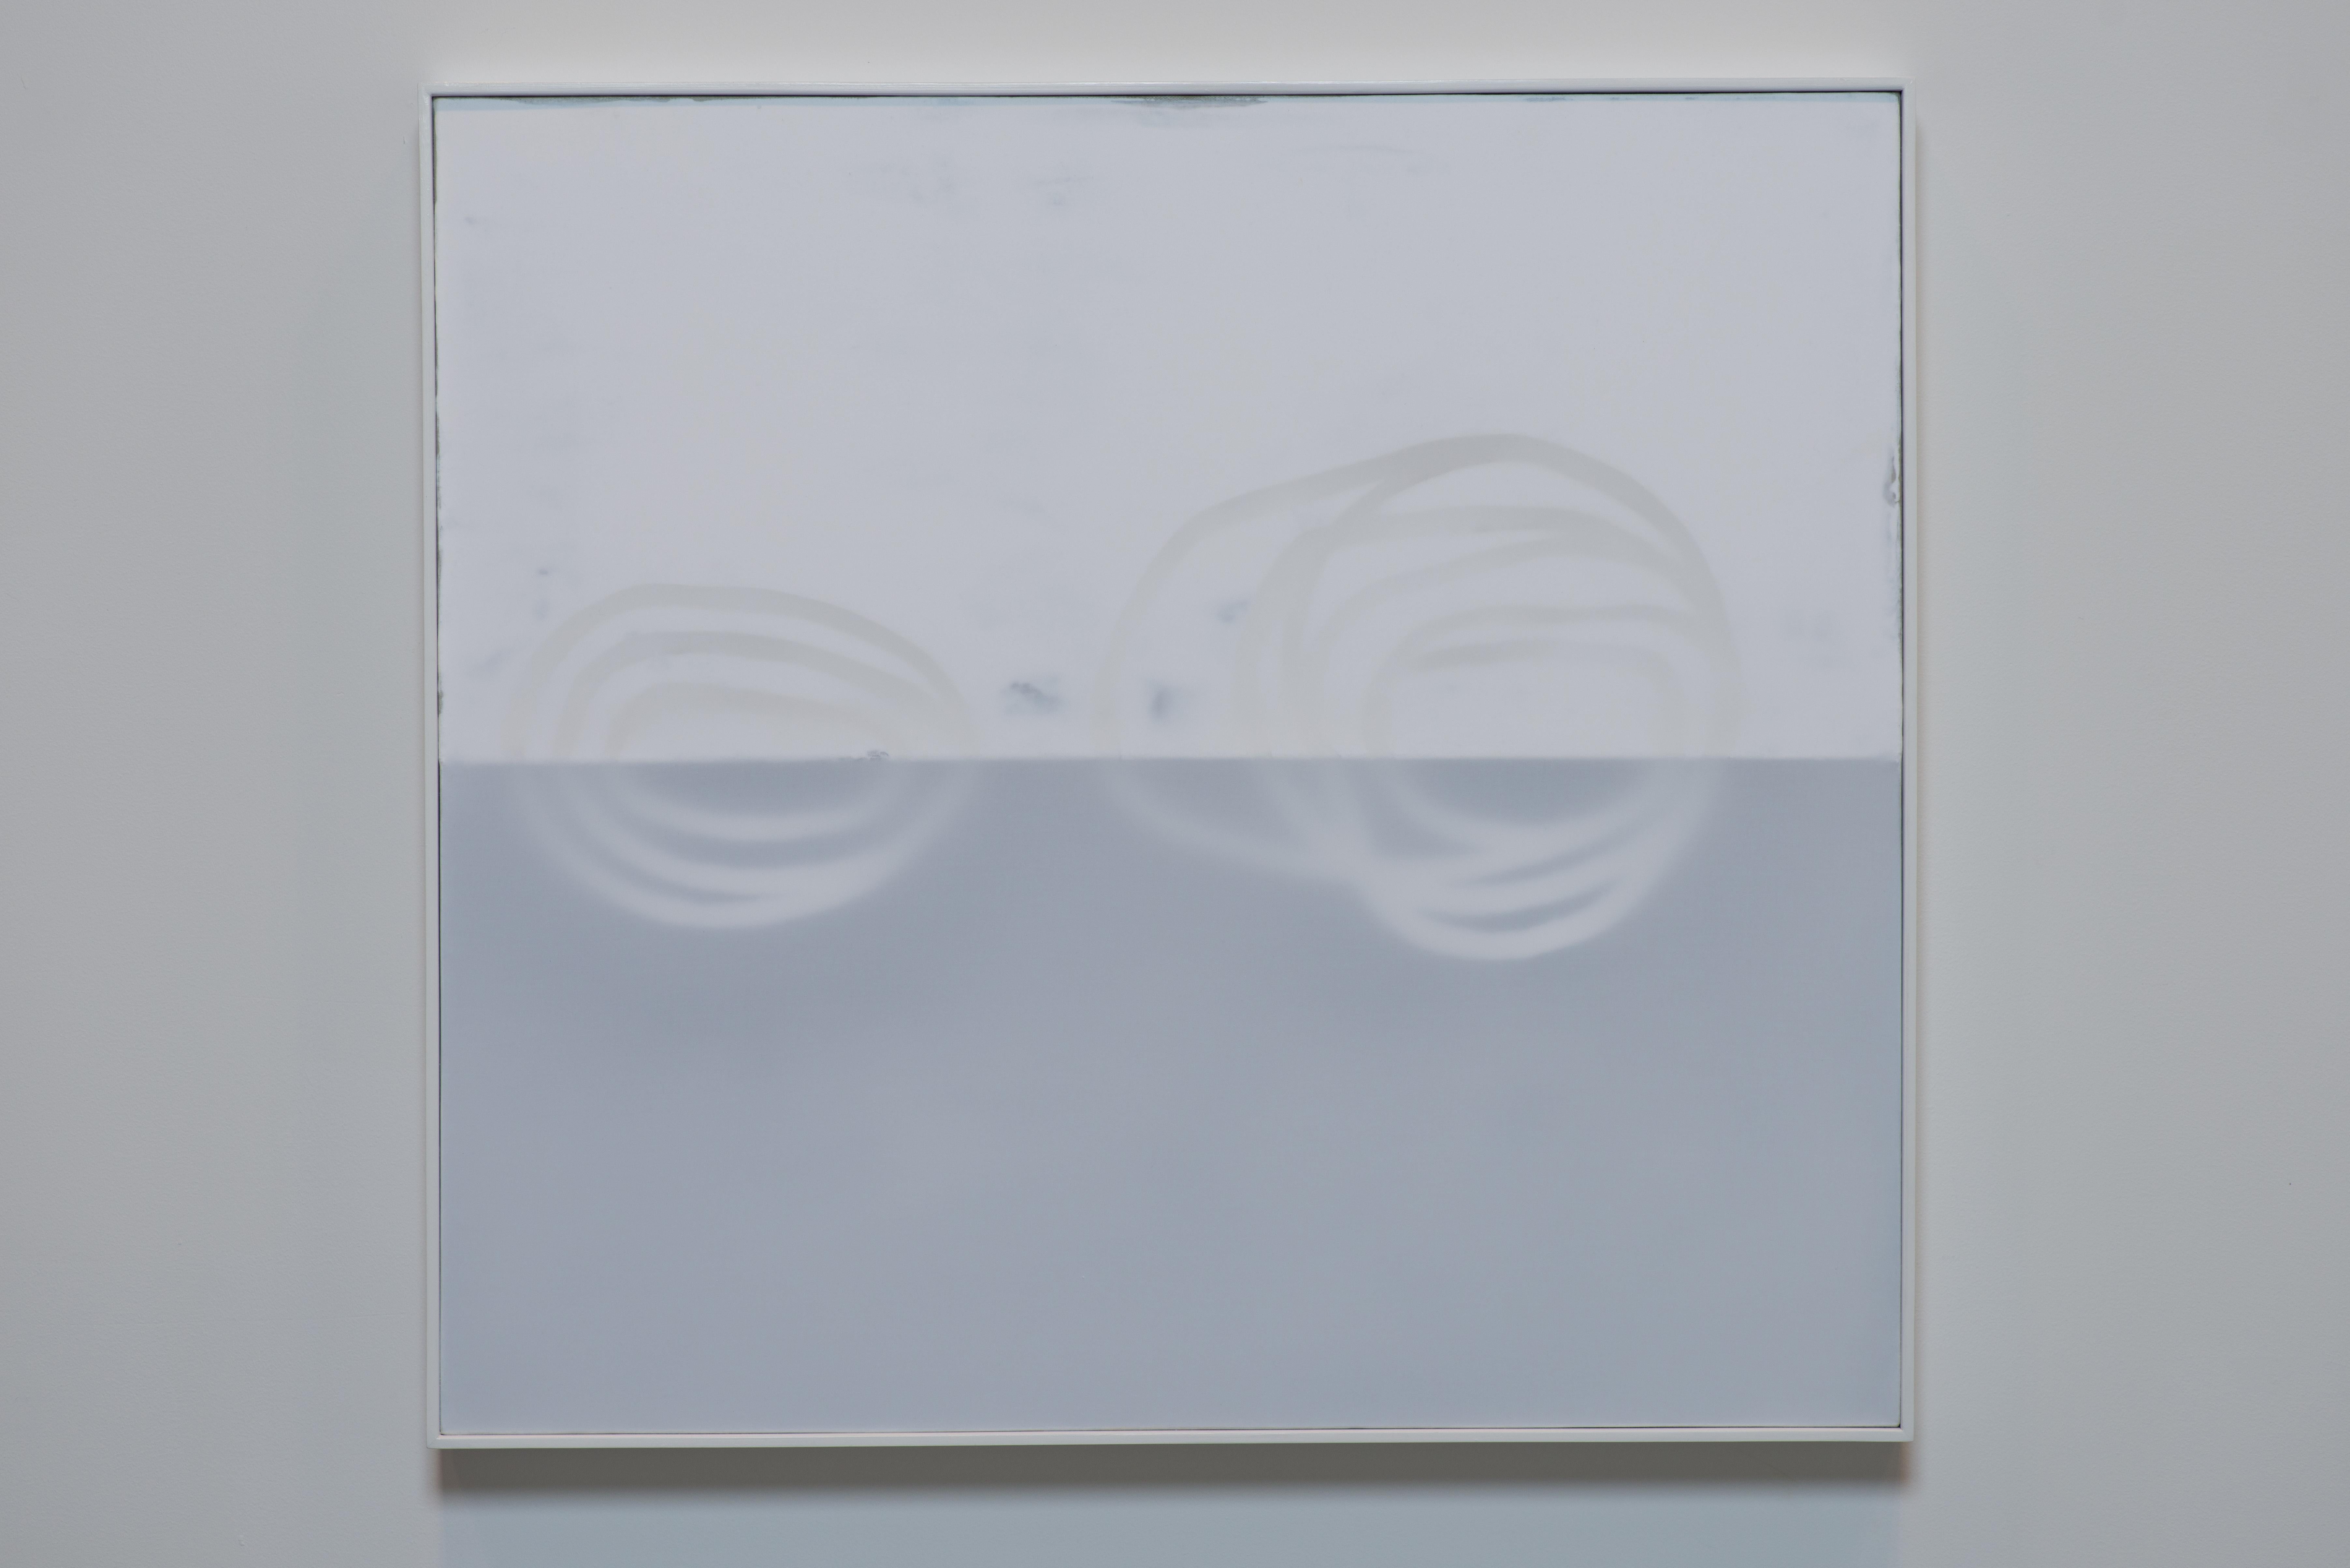 Peinture abstraite sur toile, blanc sur blanc, petite, minimaliste - Contemporain Mixed Media Art par Udo Noger